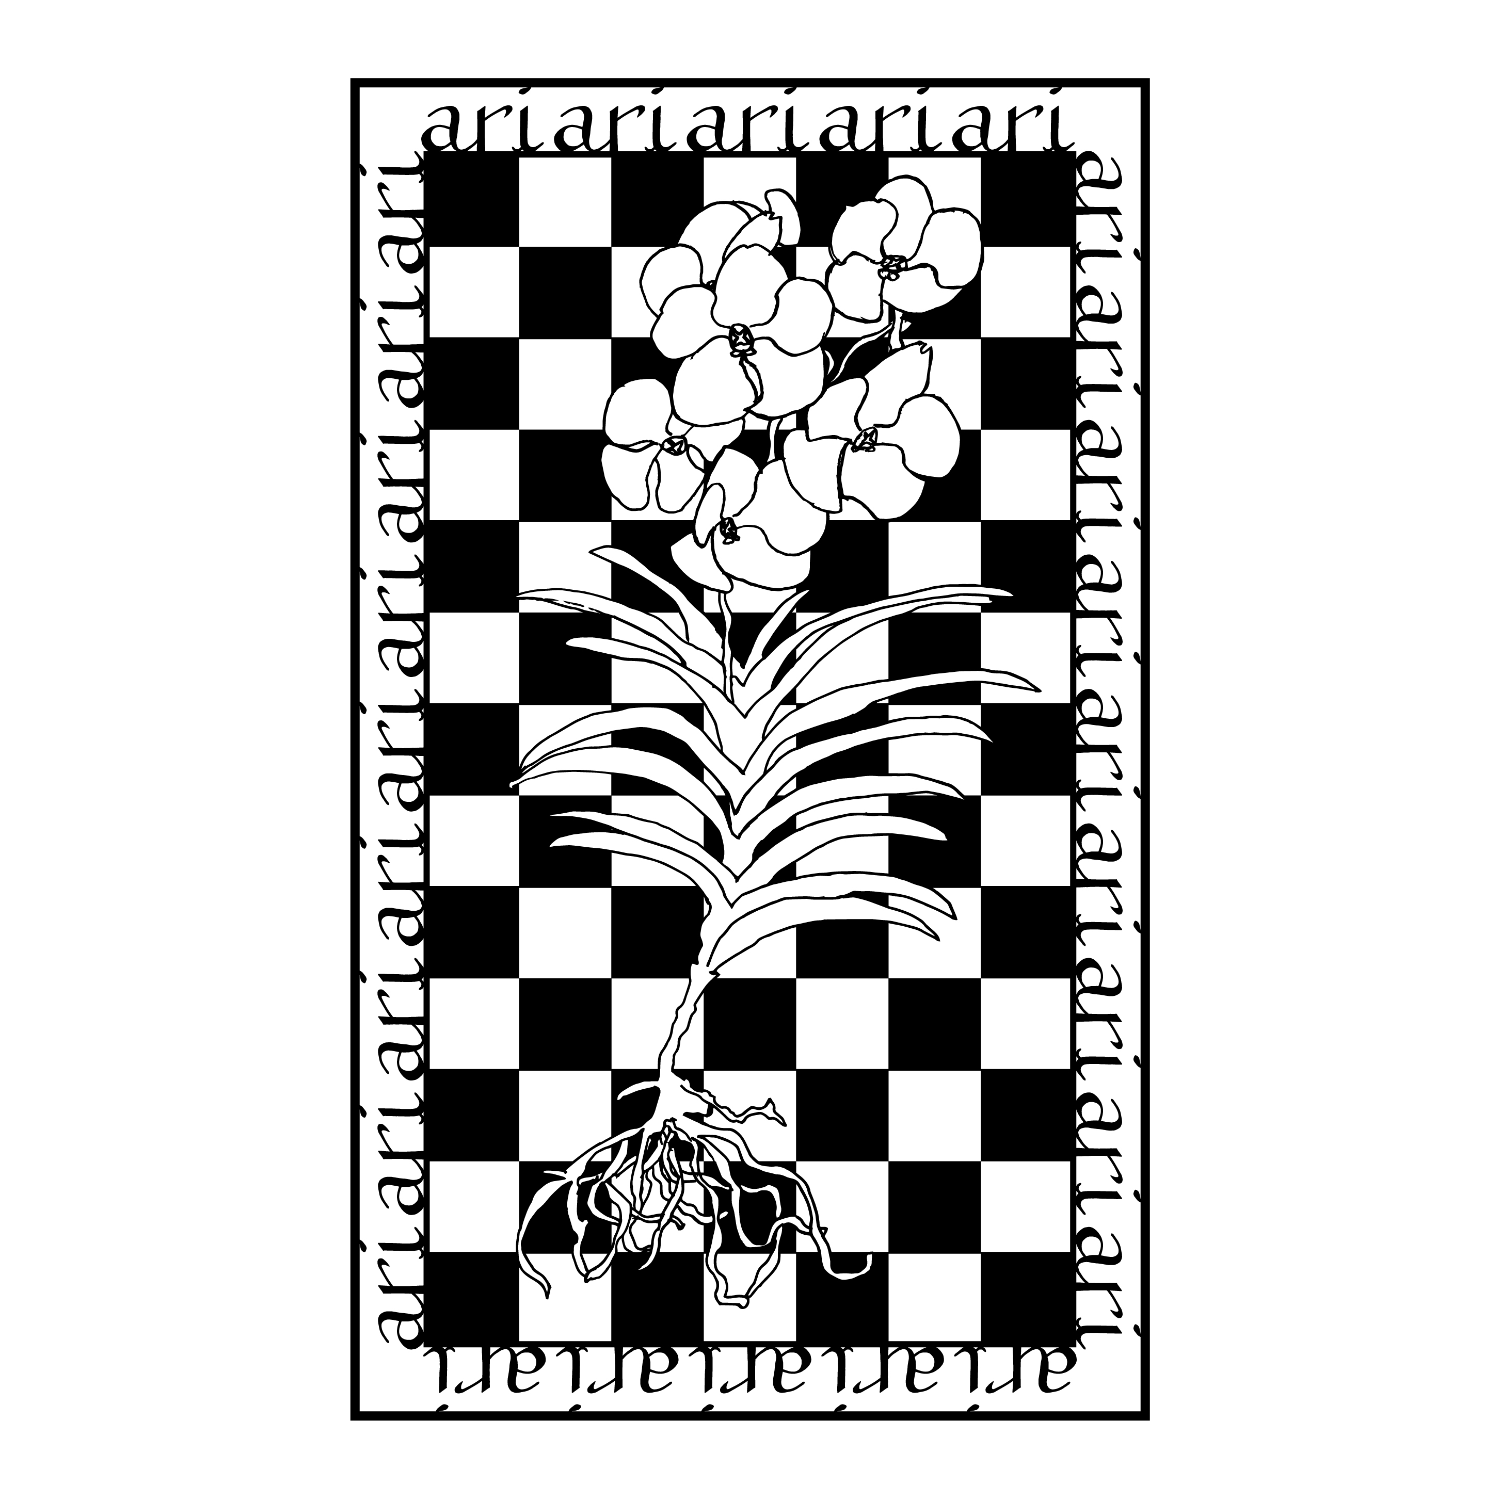 白黒チェックの背景に蘭の一種バンダのイラストが描かれたグラフィック。ari?ロゴが装飾で周囲を囲っている。